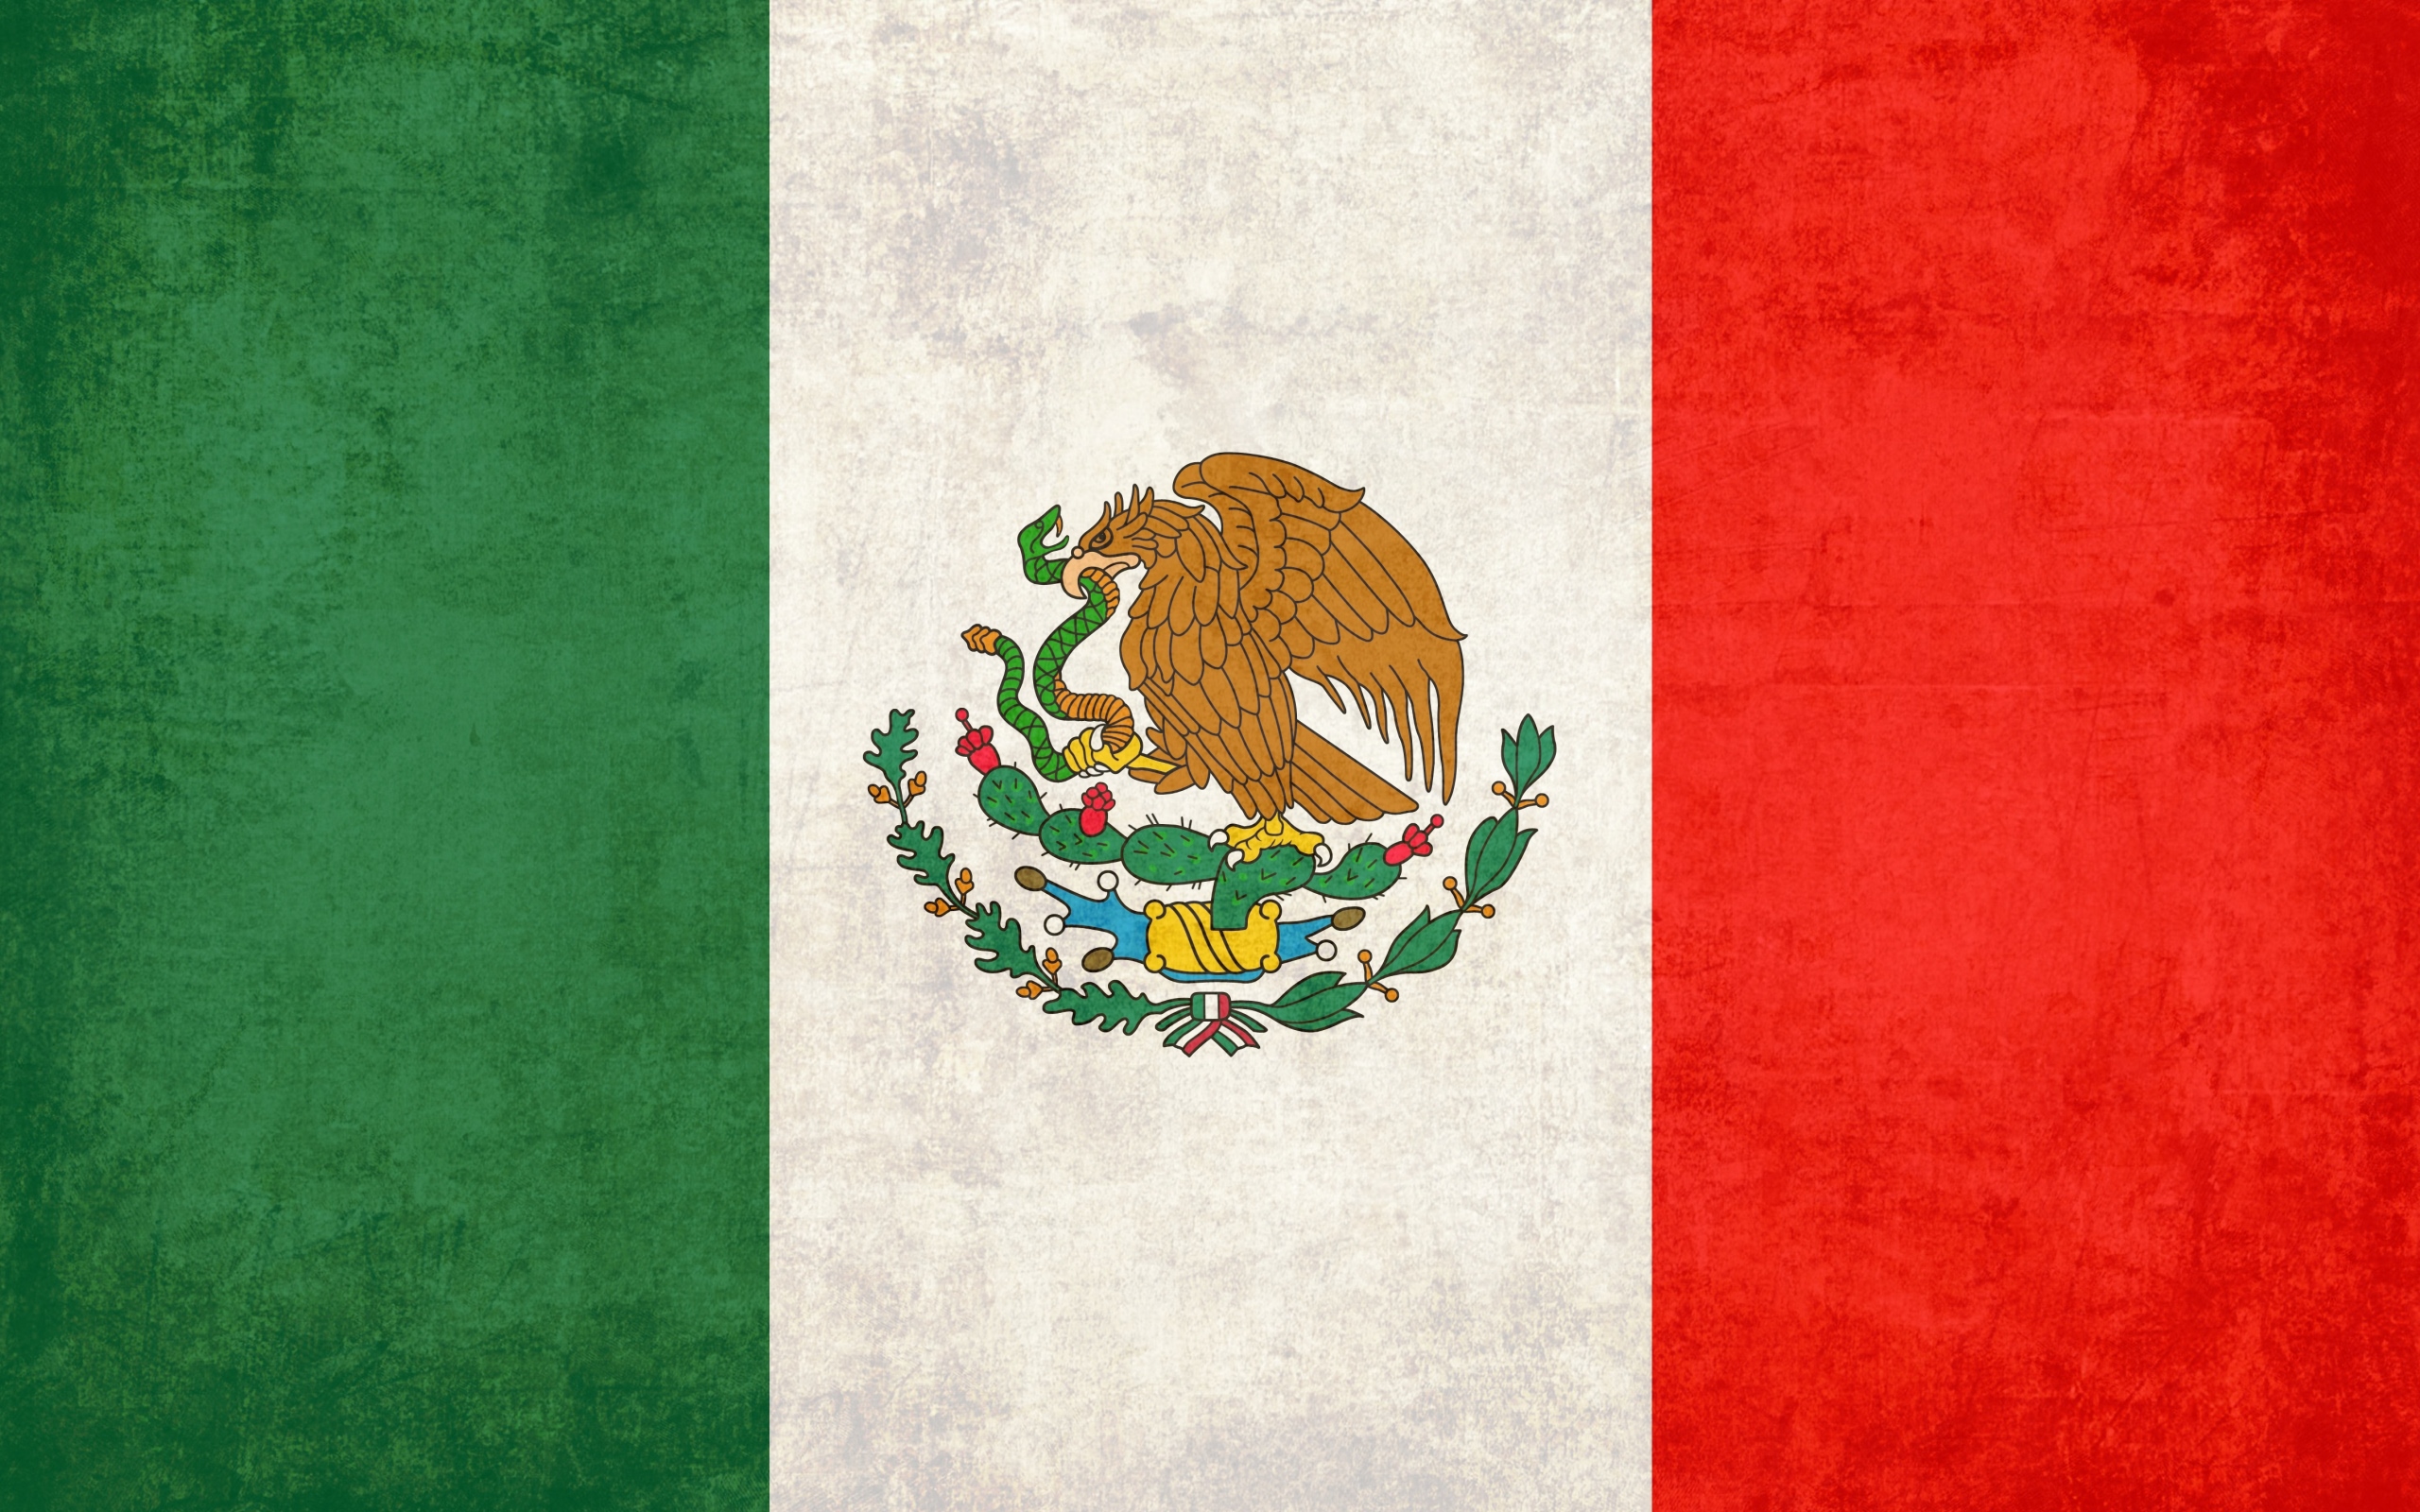 مکزیک بهترین پرچم را بین تیم های حاضر در جام جهانی دارد